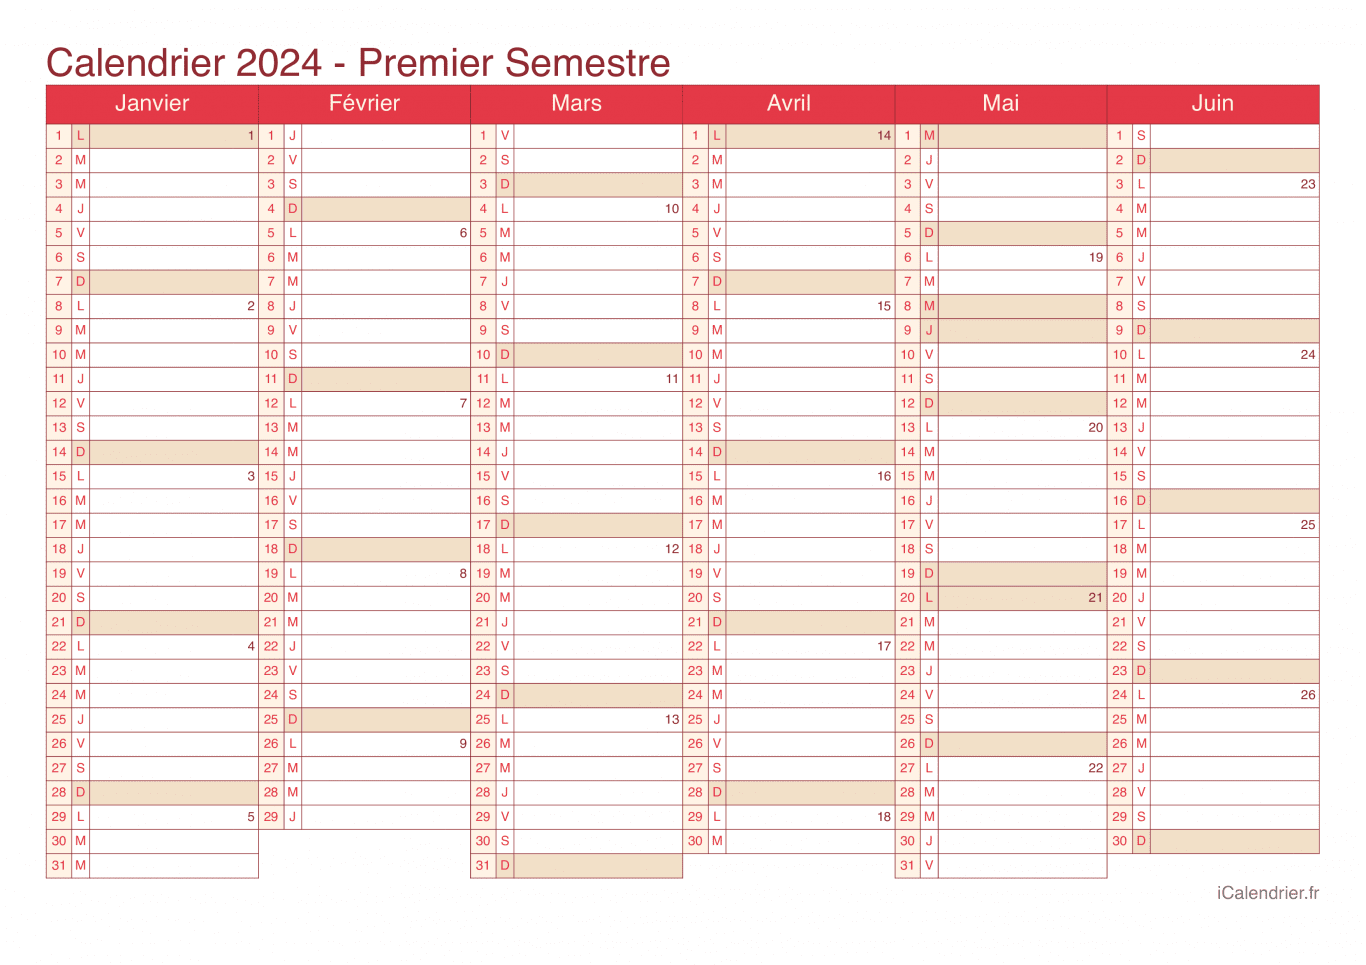 Calendrier par semestre avec numéros des semaines 2024 - Cherry